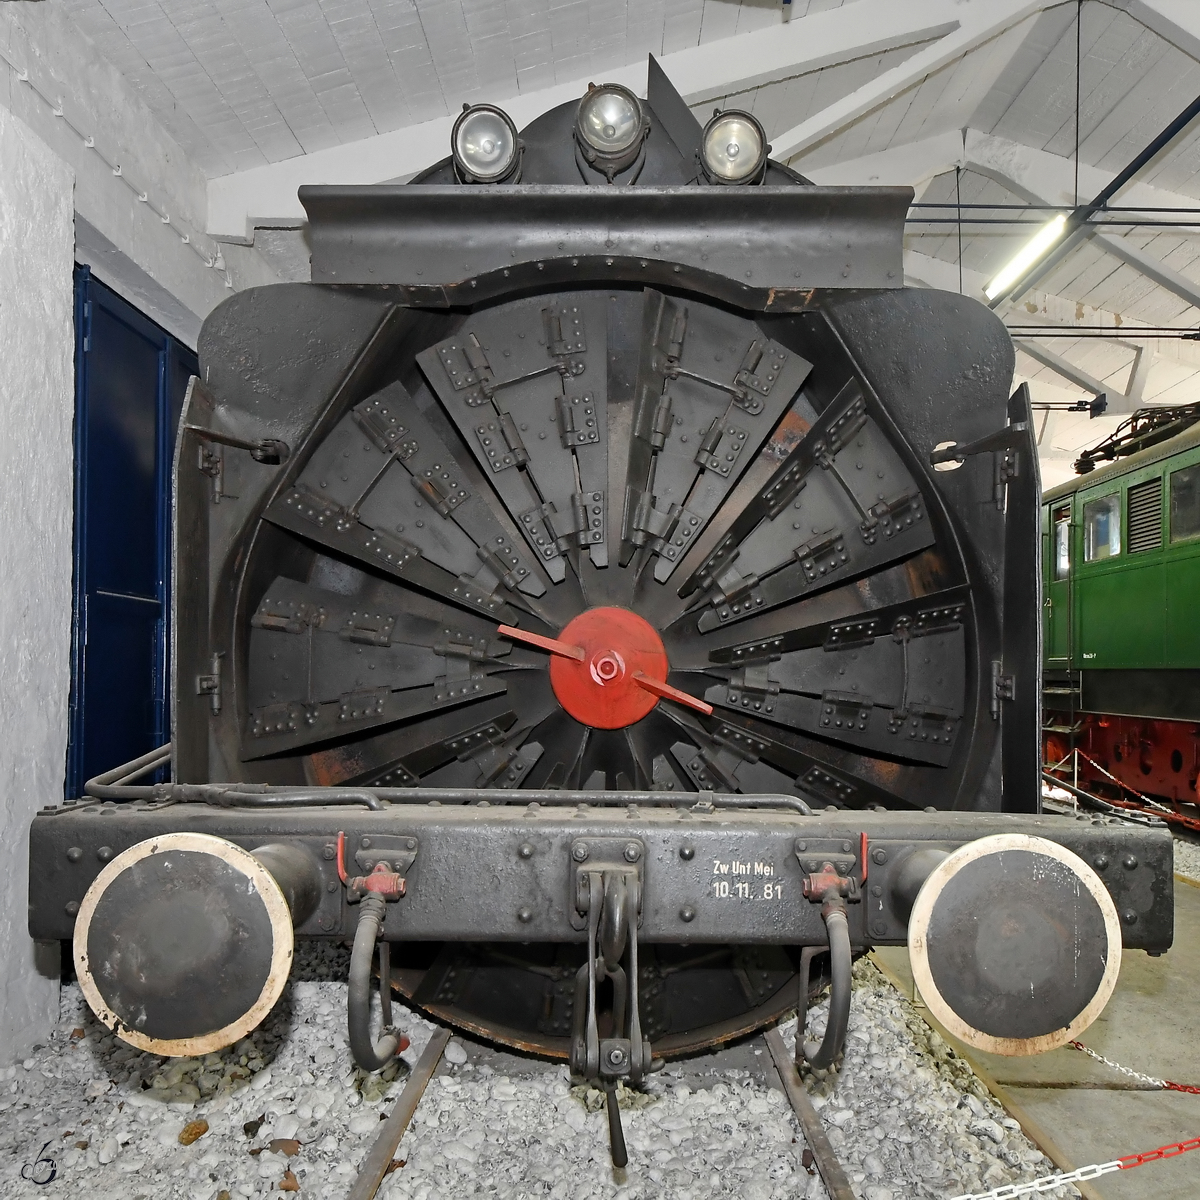 Das riesige Schleuderrad der Dampfschneeschleuder 700 582 vom Typ SSH61. (Oldtimermuseum Prora, April 2019)